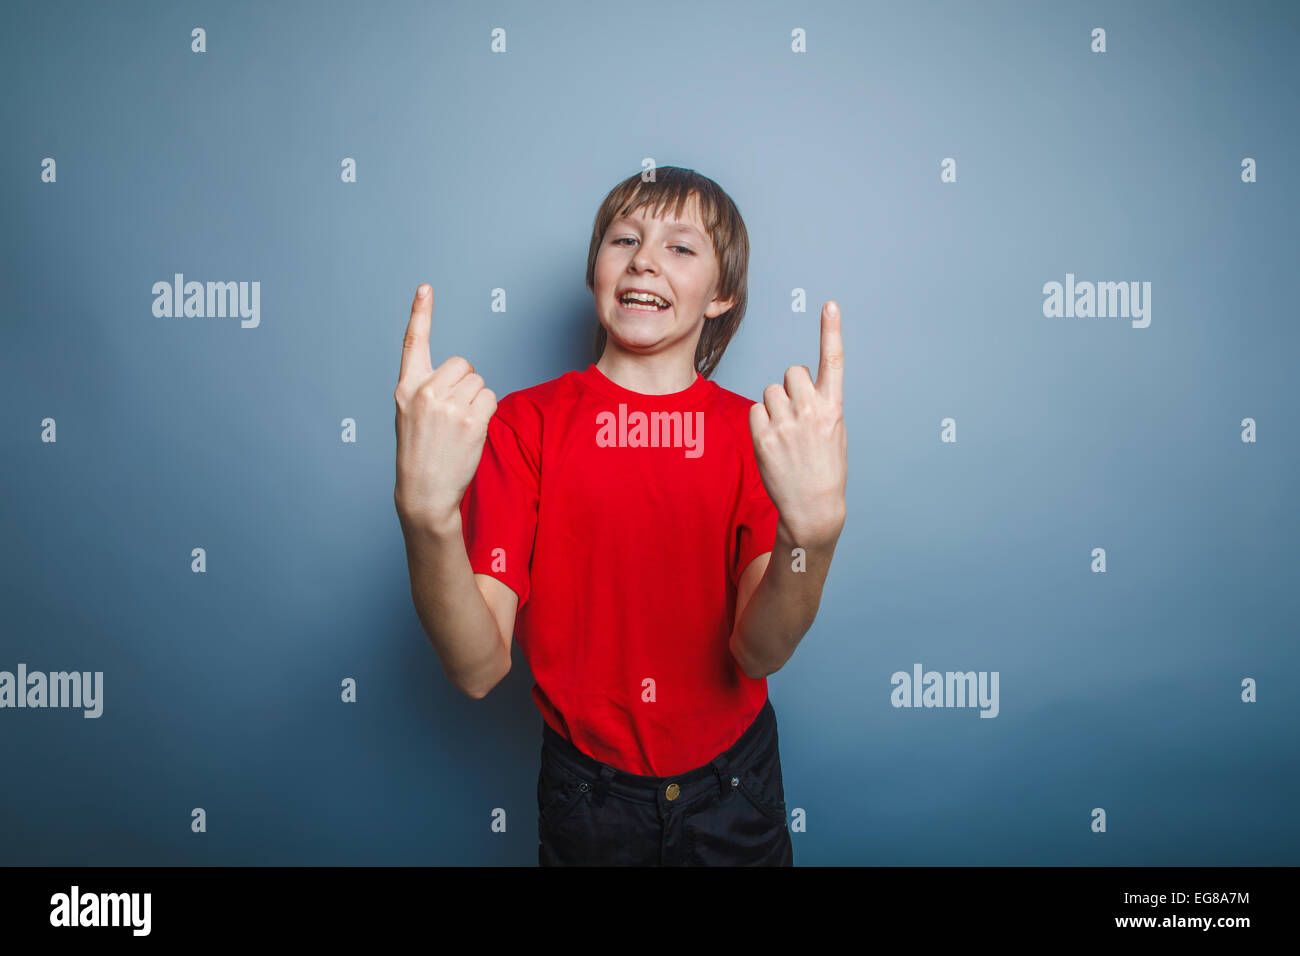 Ragazzo adolescente aspetto europeo in una maglietta rossa indica il numero Foto Stock